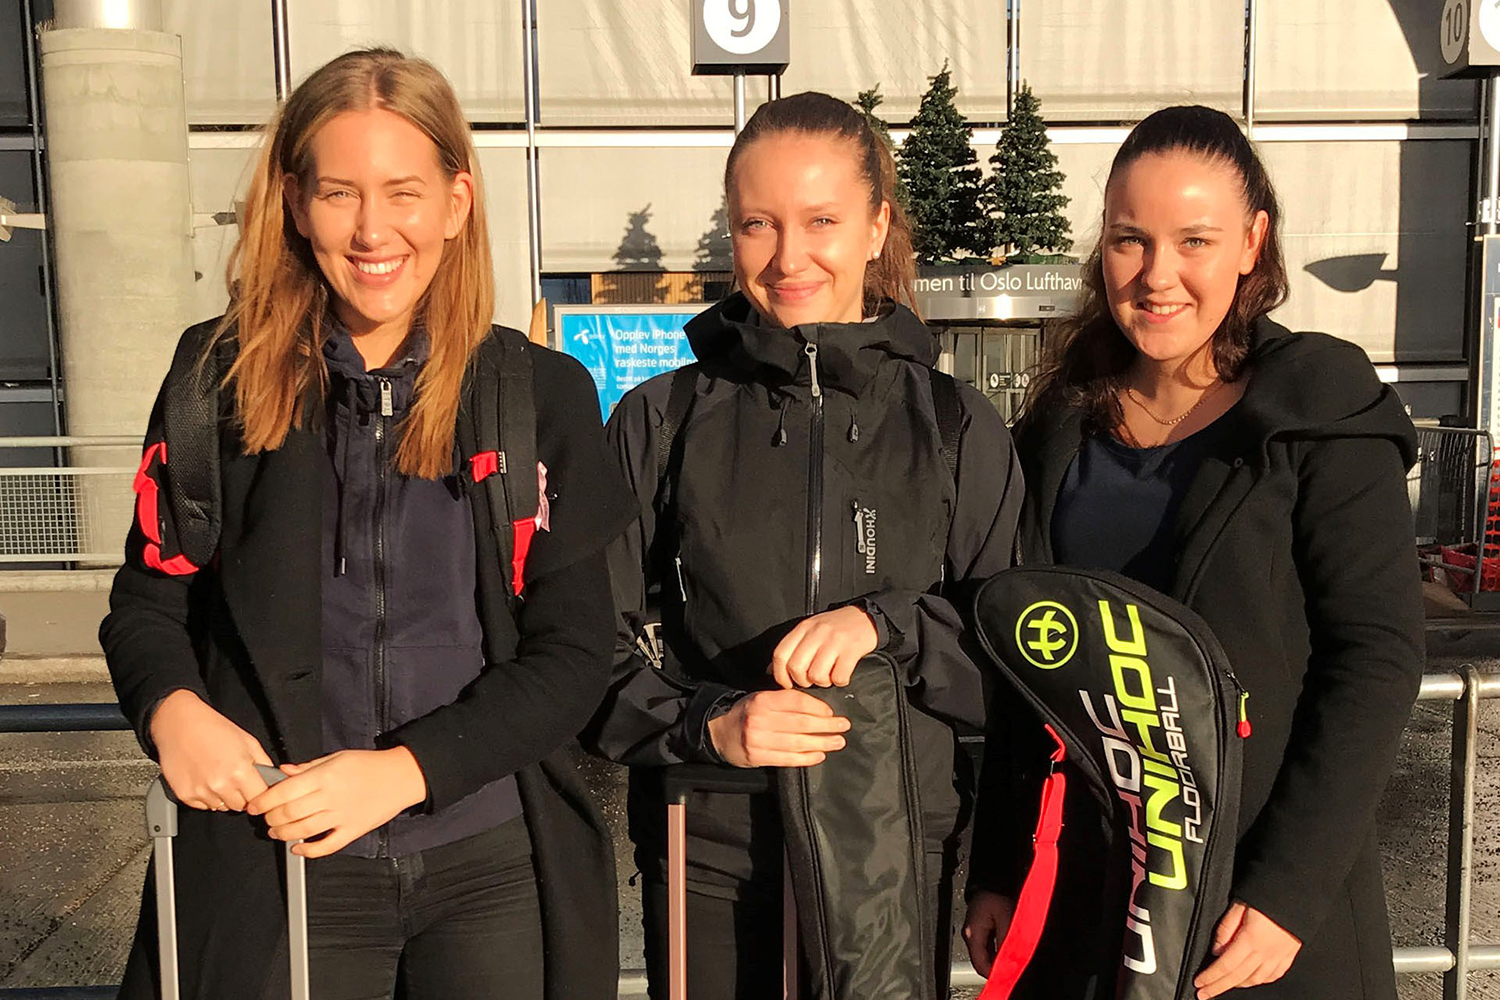 Etter et besøk og prøvespill i høst fant Filippa Jansson, Alva Sjölund og Frida Tjärnström ut at det var Sveiva de ønsket å spille for nå når de flytter til Oslo.